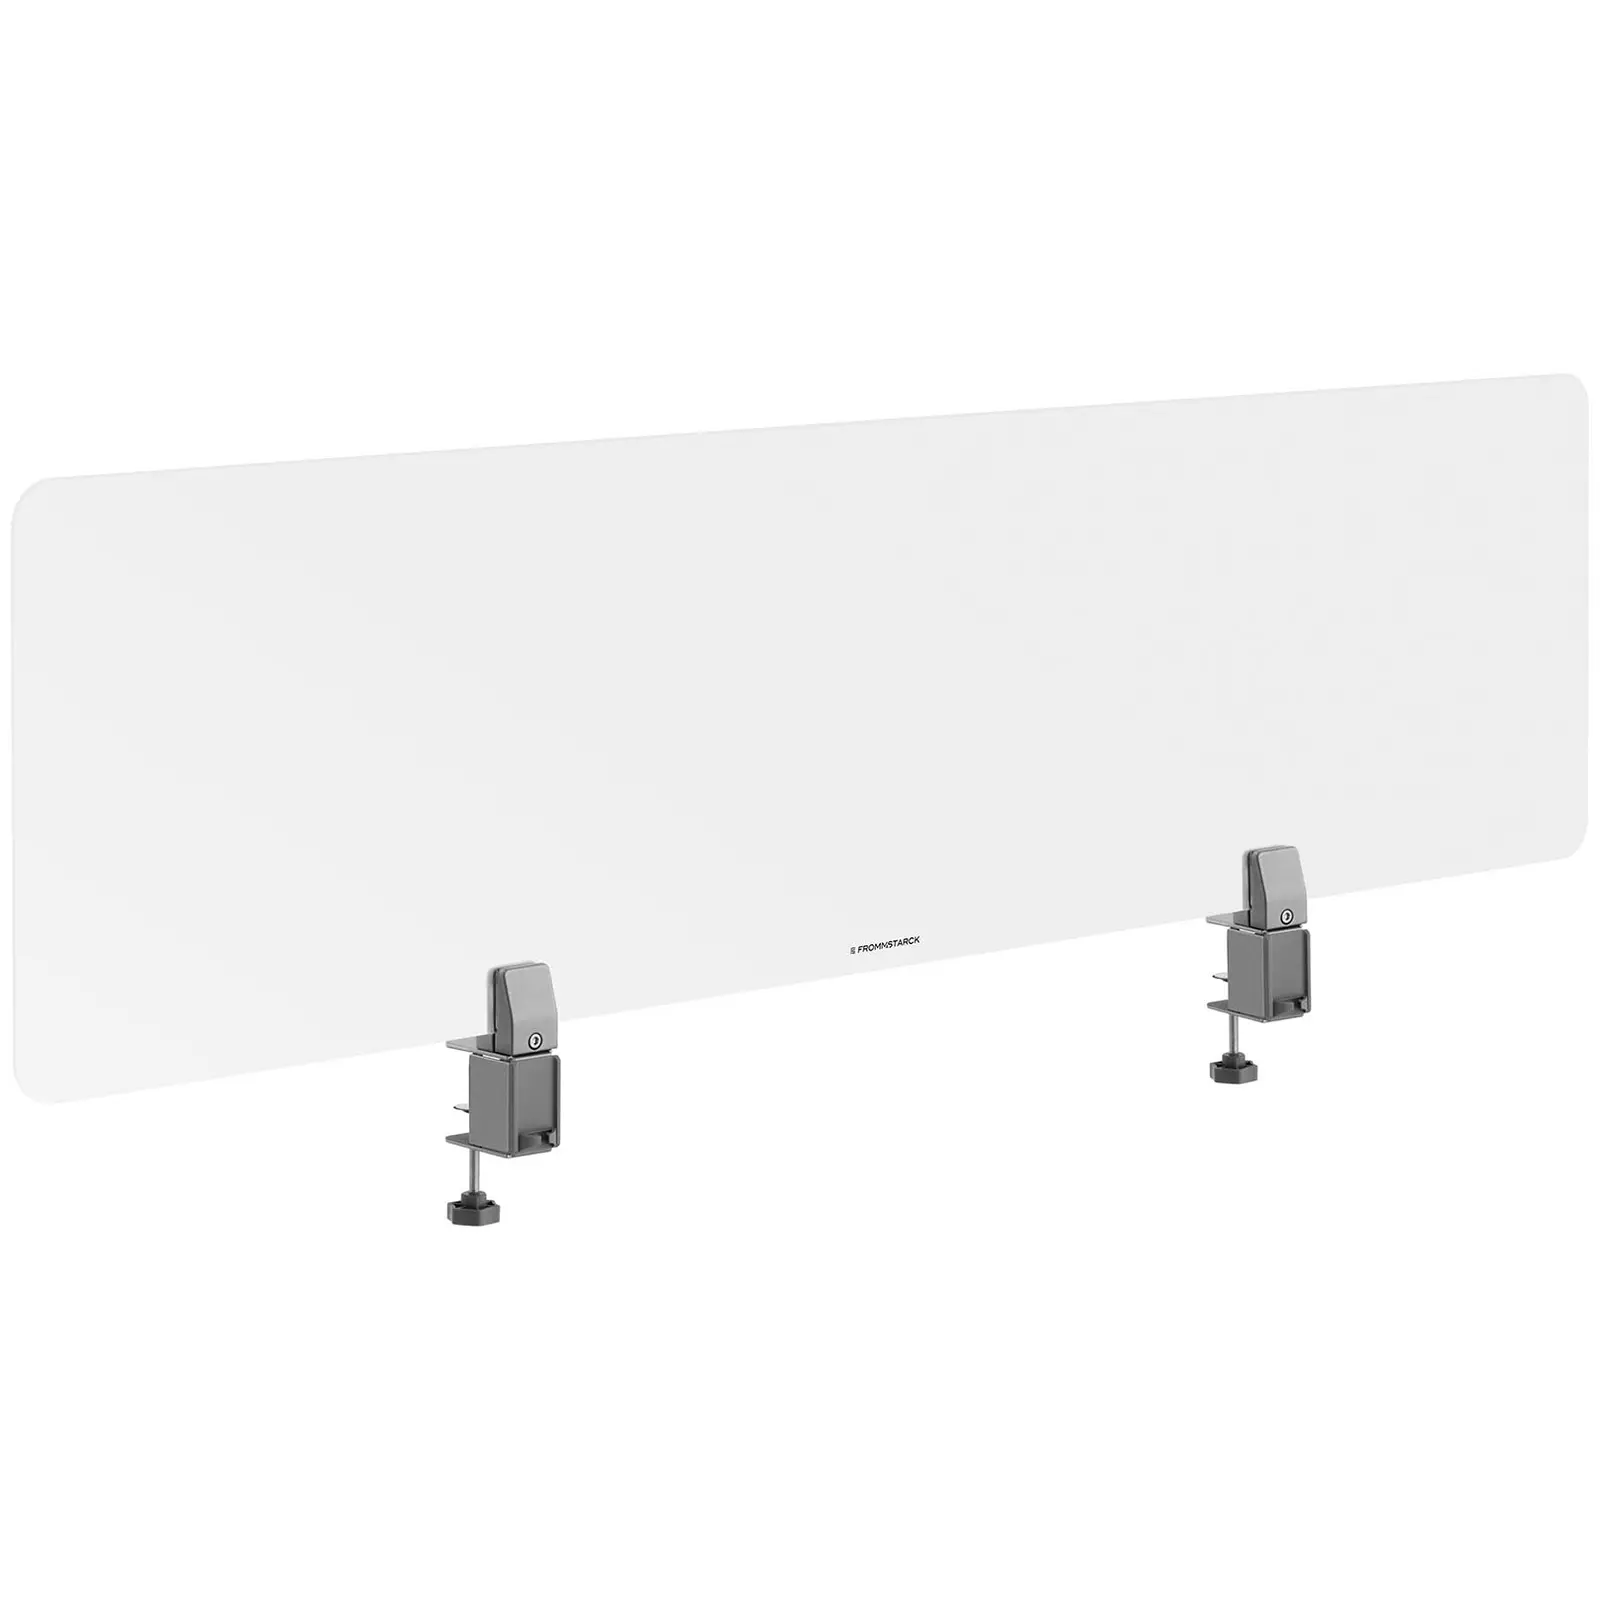 Bordskjermer – 1500 x 400 mm